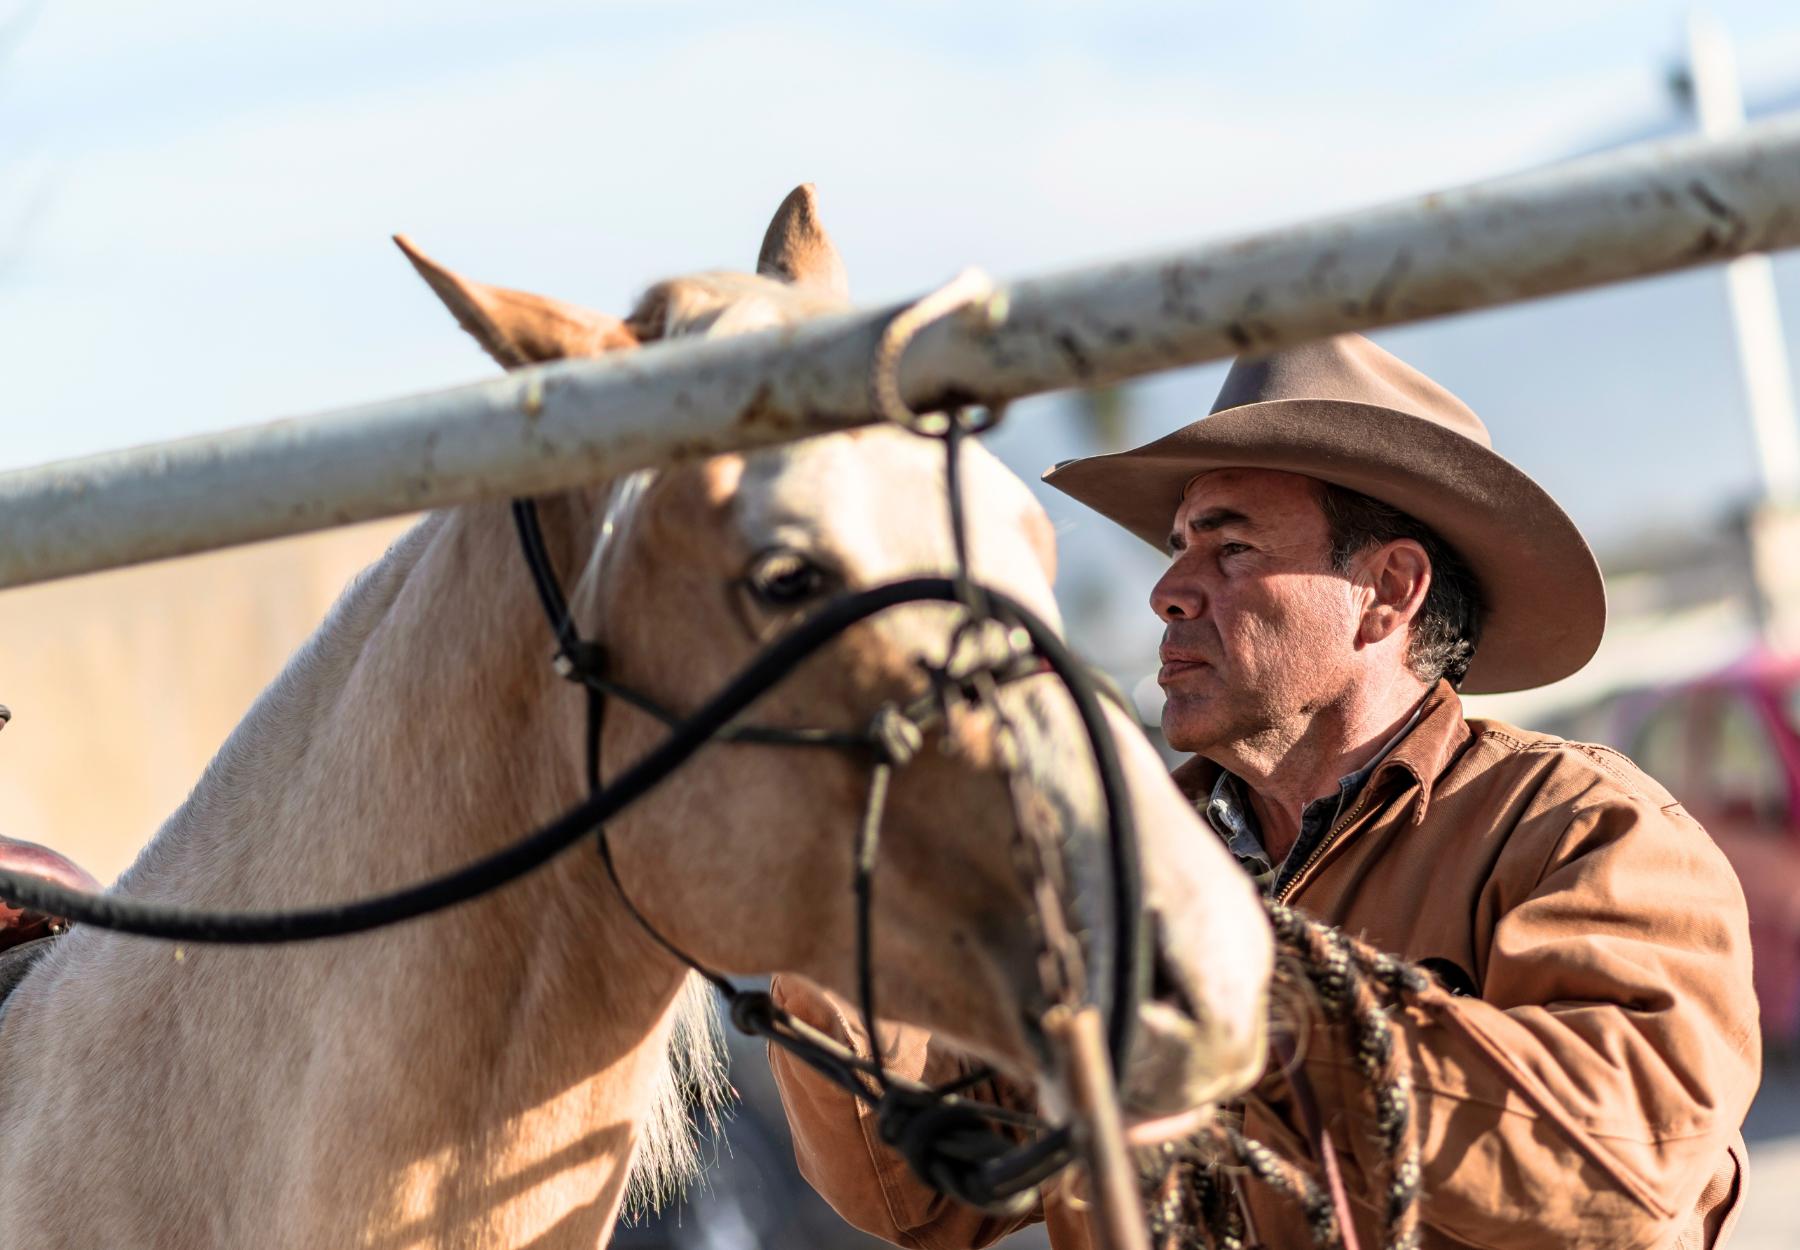 $!En la primera edición de Rodeo Capital, David Alonso nos comparte su fascinante recorrido como domador de caballos.